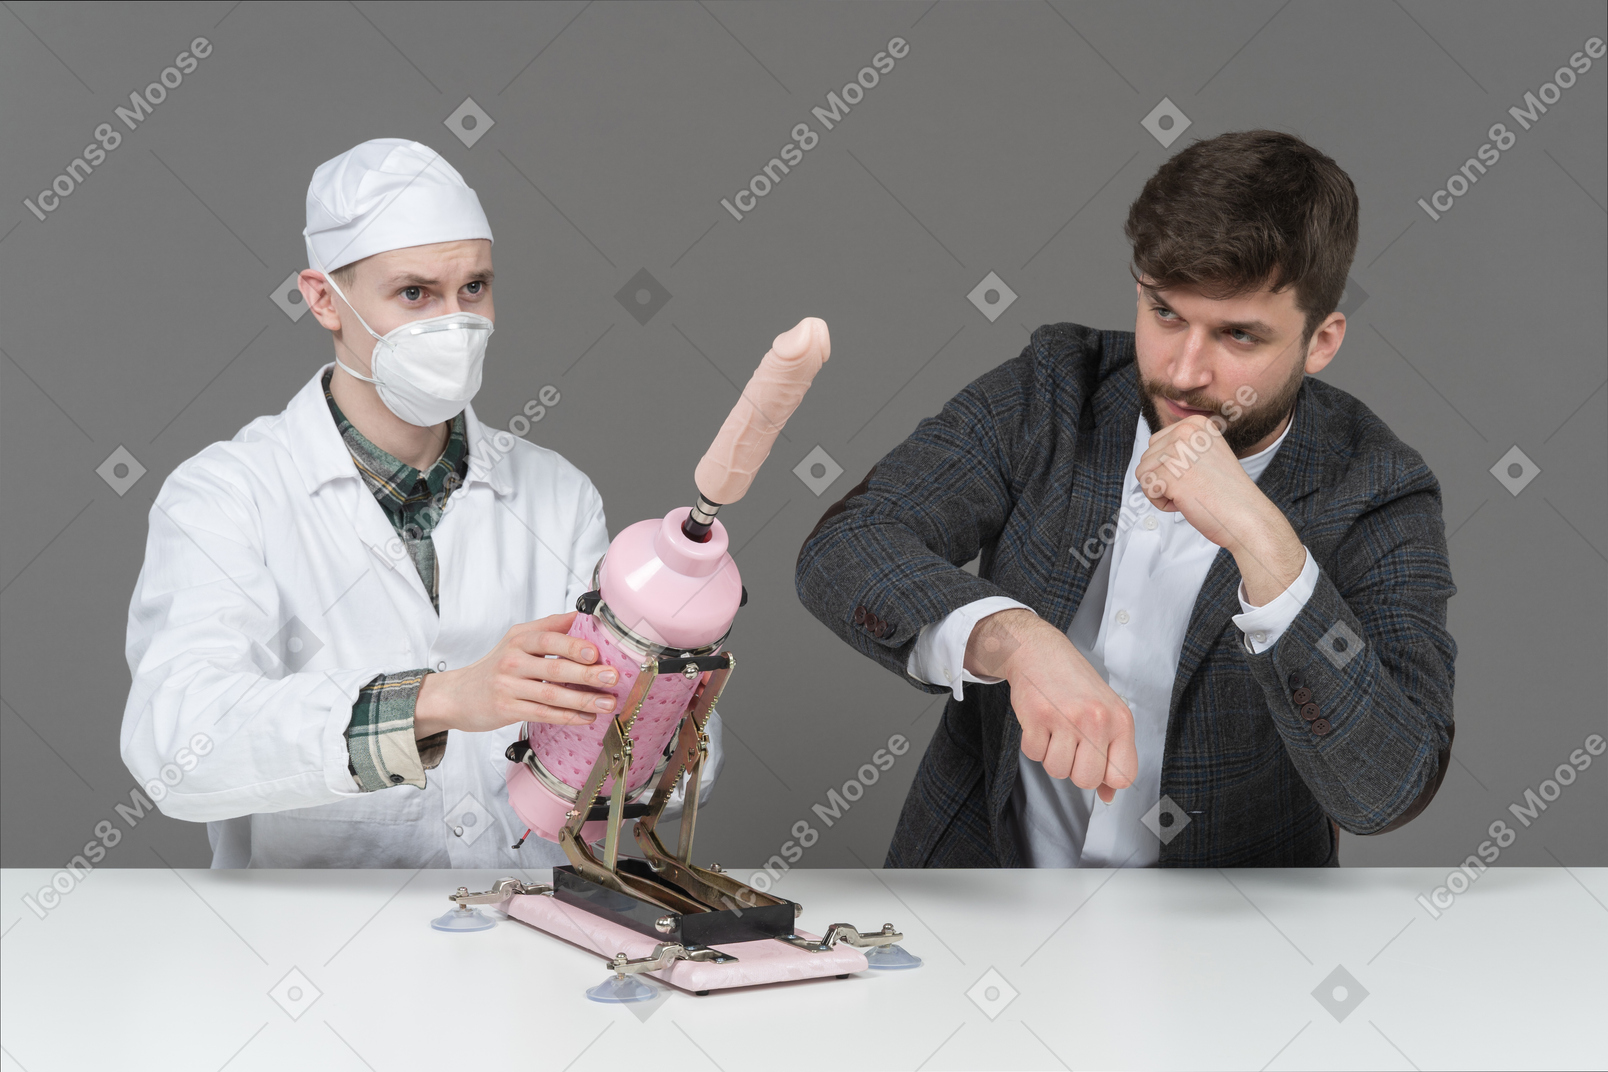 Jovem de terno e médico examinando máquina de sexo